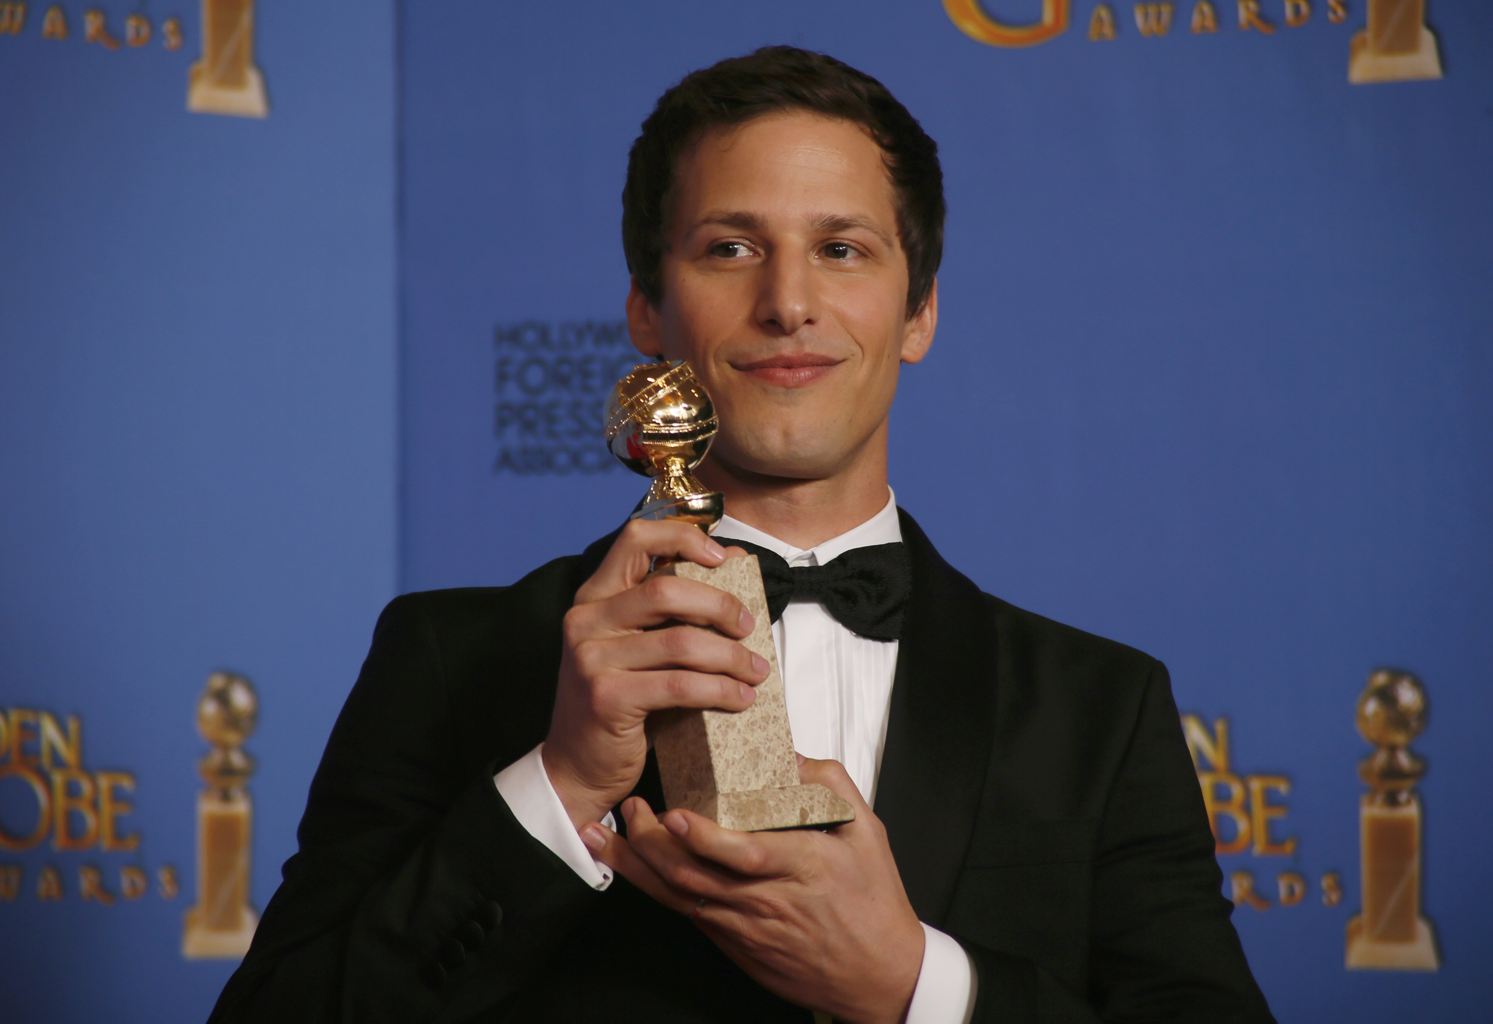 آندي سامبرج فاز بجائزة أفضل ممثل كوميديا تليفزيونية عن دوره في Brooklyn Nine-Nine